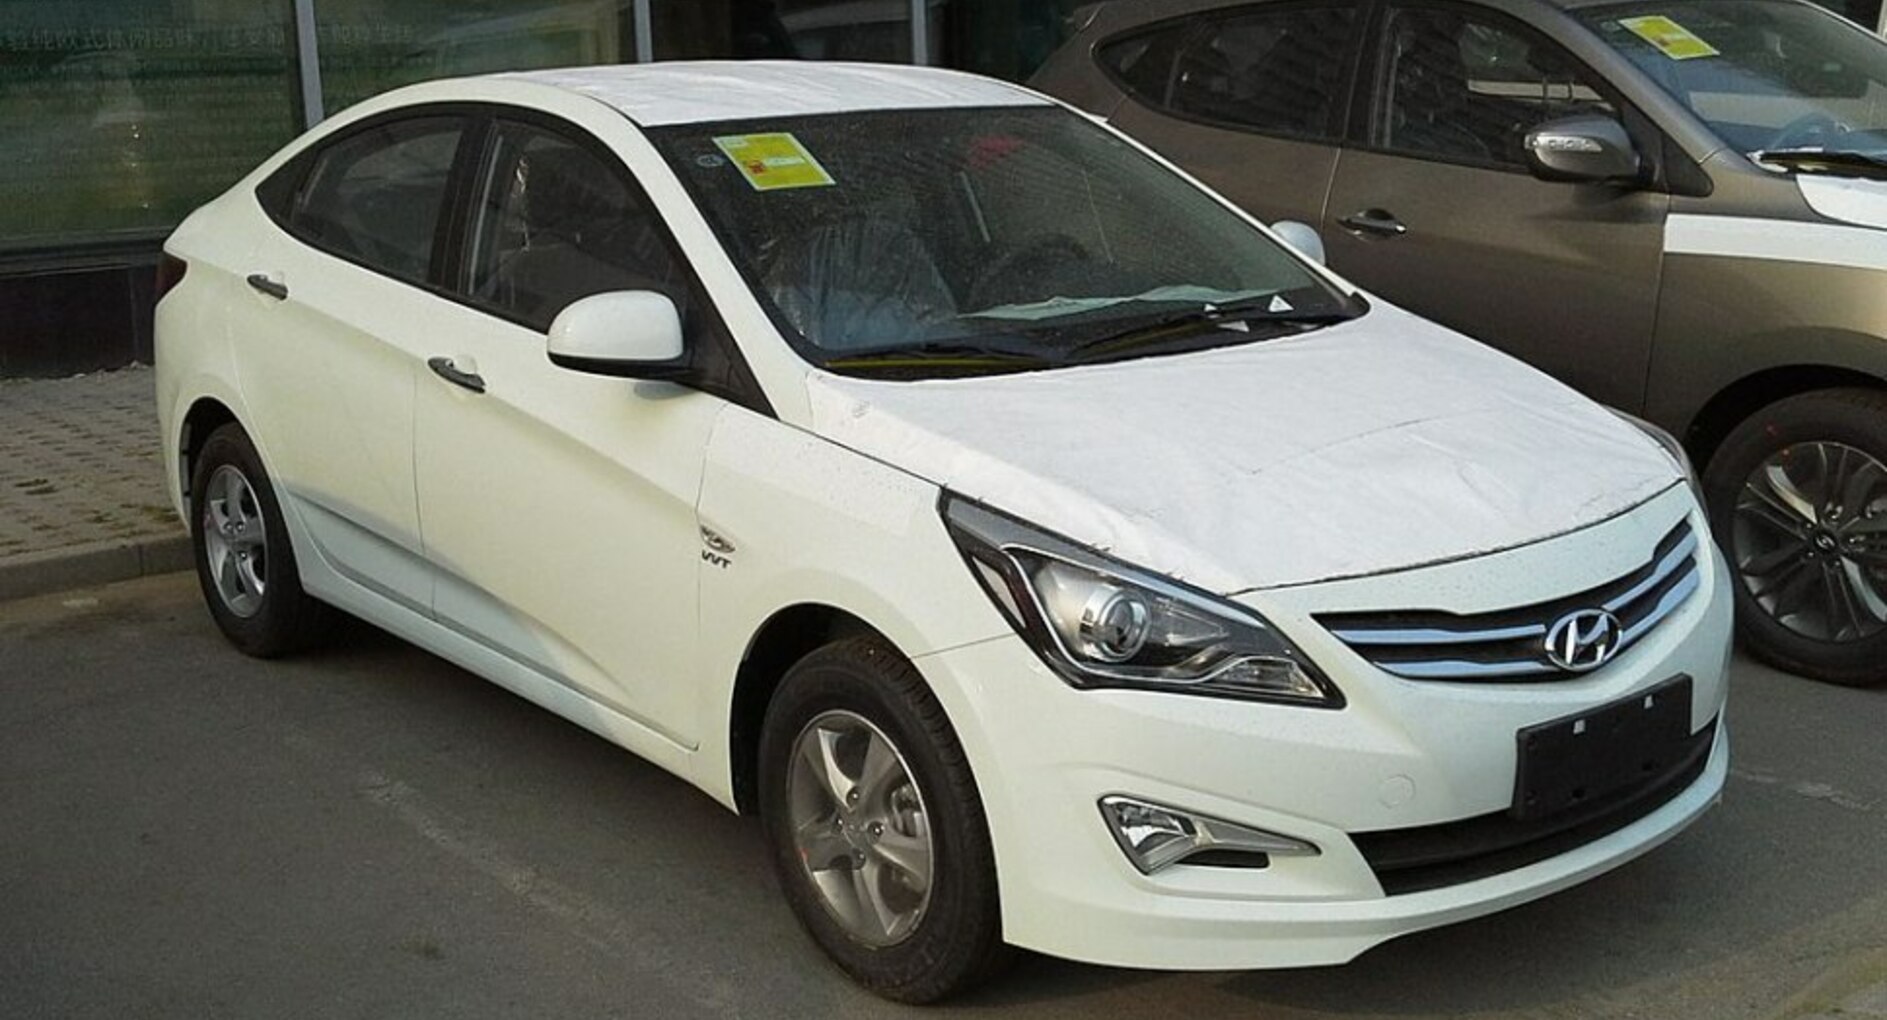 Hyundai Verna IV (facelift 2015) 1.6 CRDi (128 Hp) Automatic 2015, 2016, 2017 